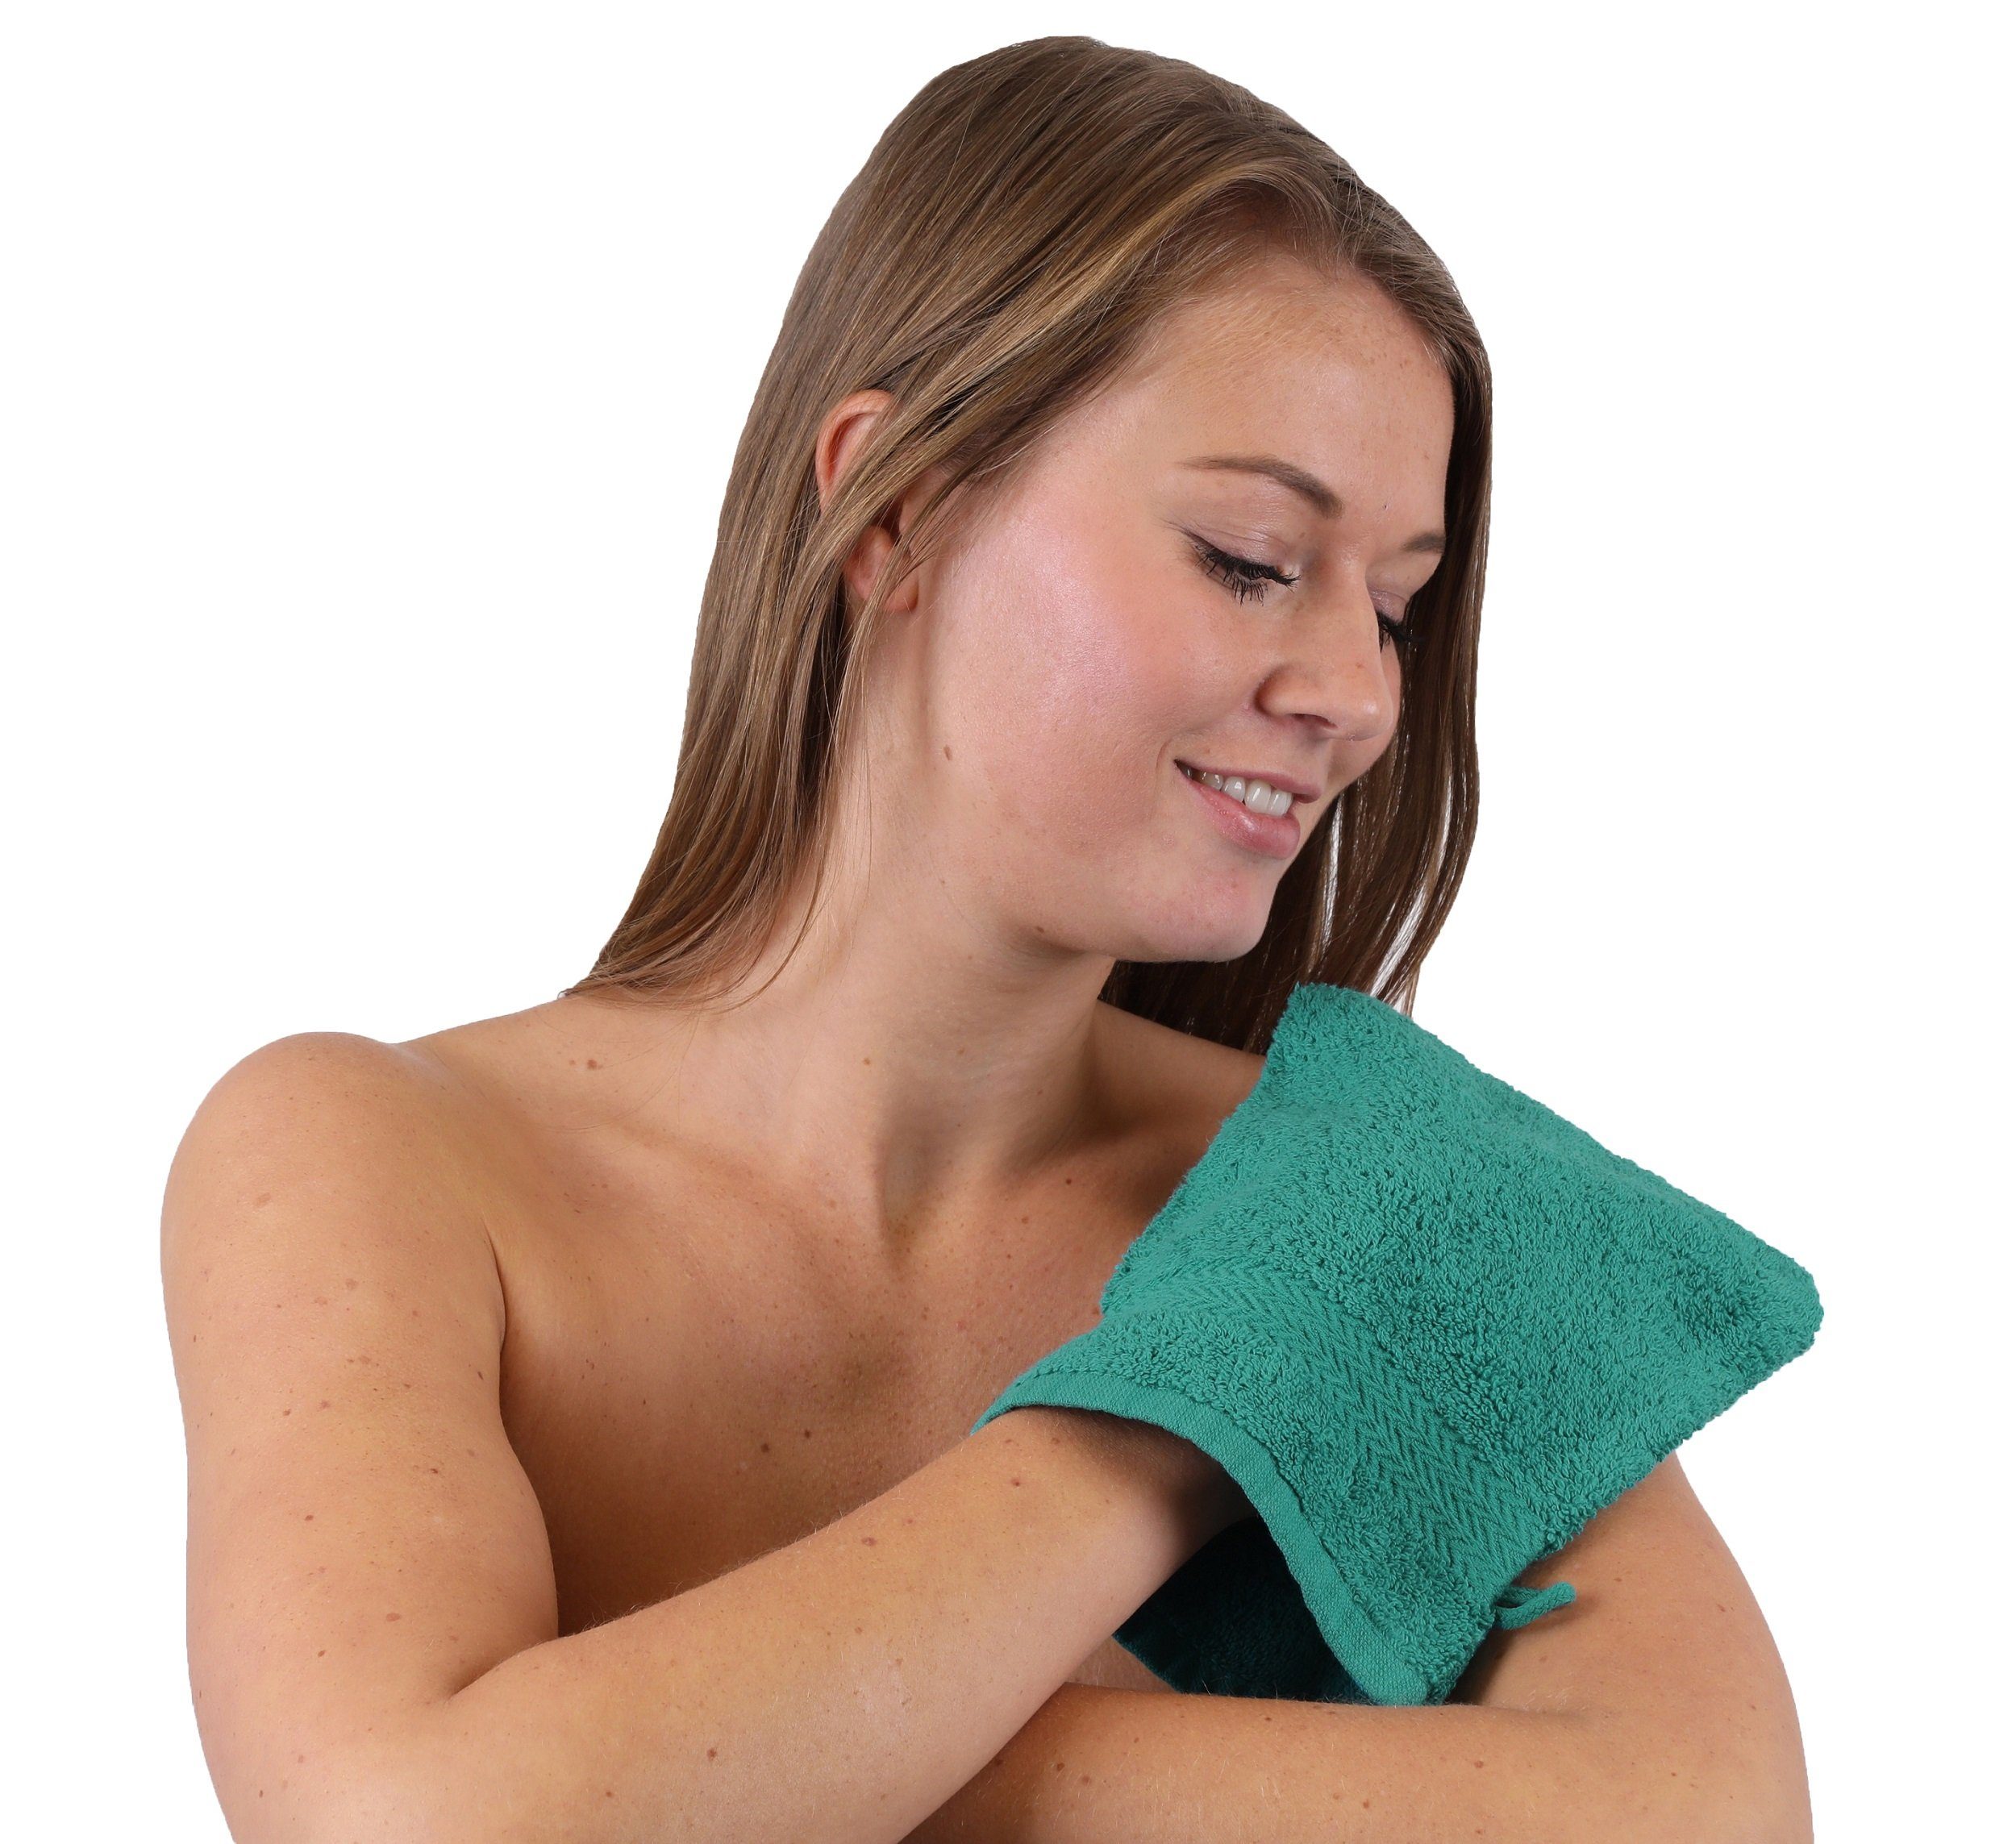 Waschhandschuh 16x21 smaragdgrün und weiß Baumwolle Betz 10 100% Stück Waschhandschuhe Waschlappen Premium cm (10-tlg) Set Farbe